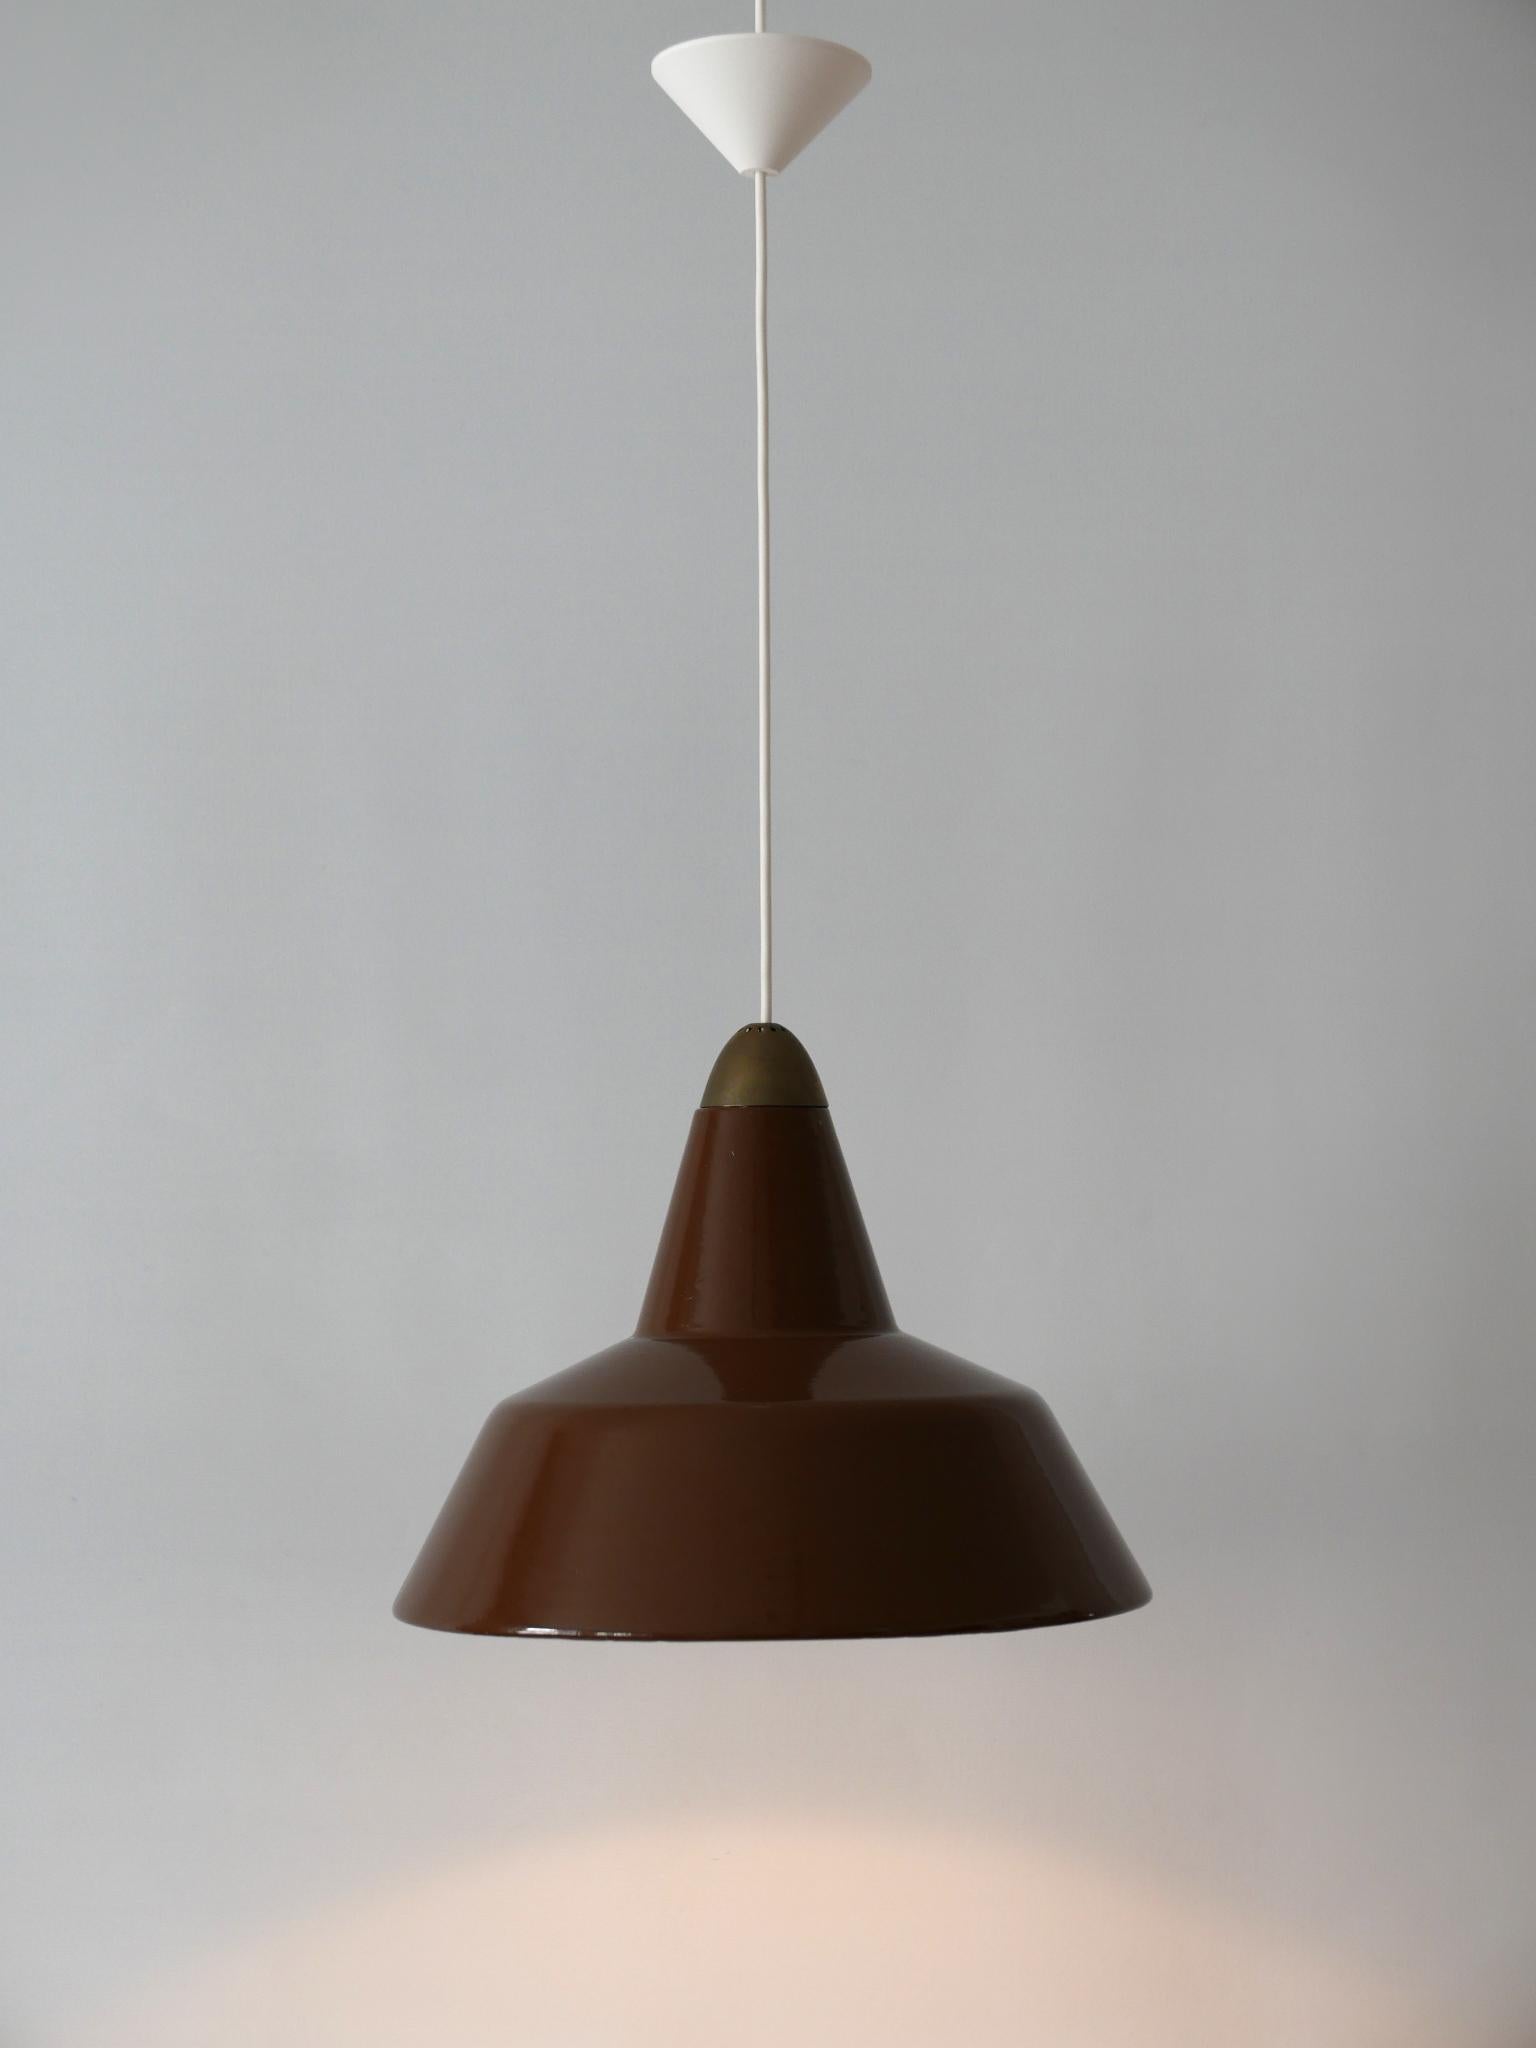 Danish Mid-Century Modern Enameled Pendant Lamp by Louis Poulsen, Denmark, 1960s